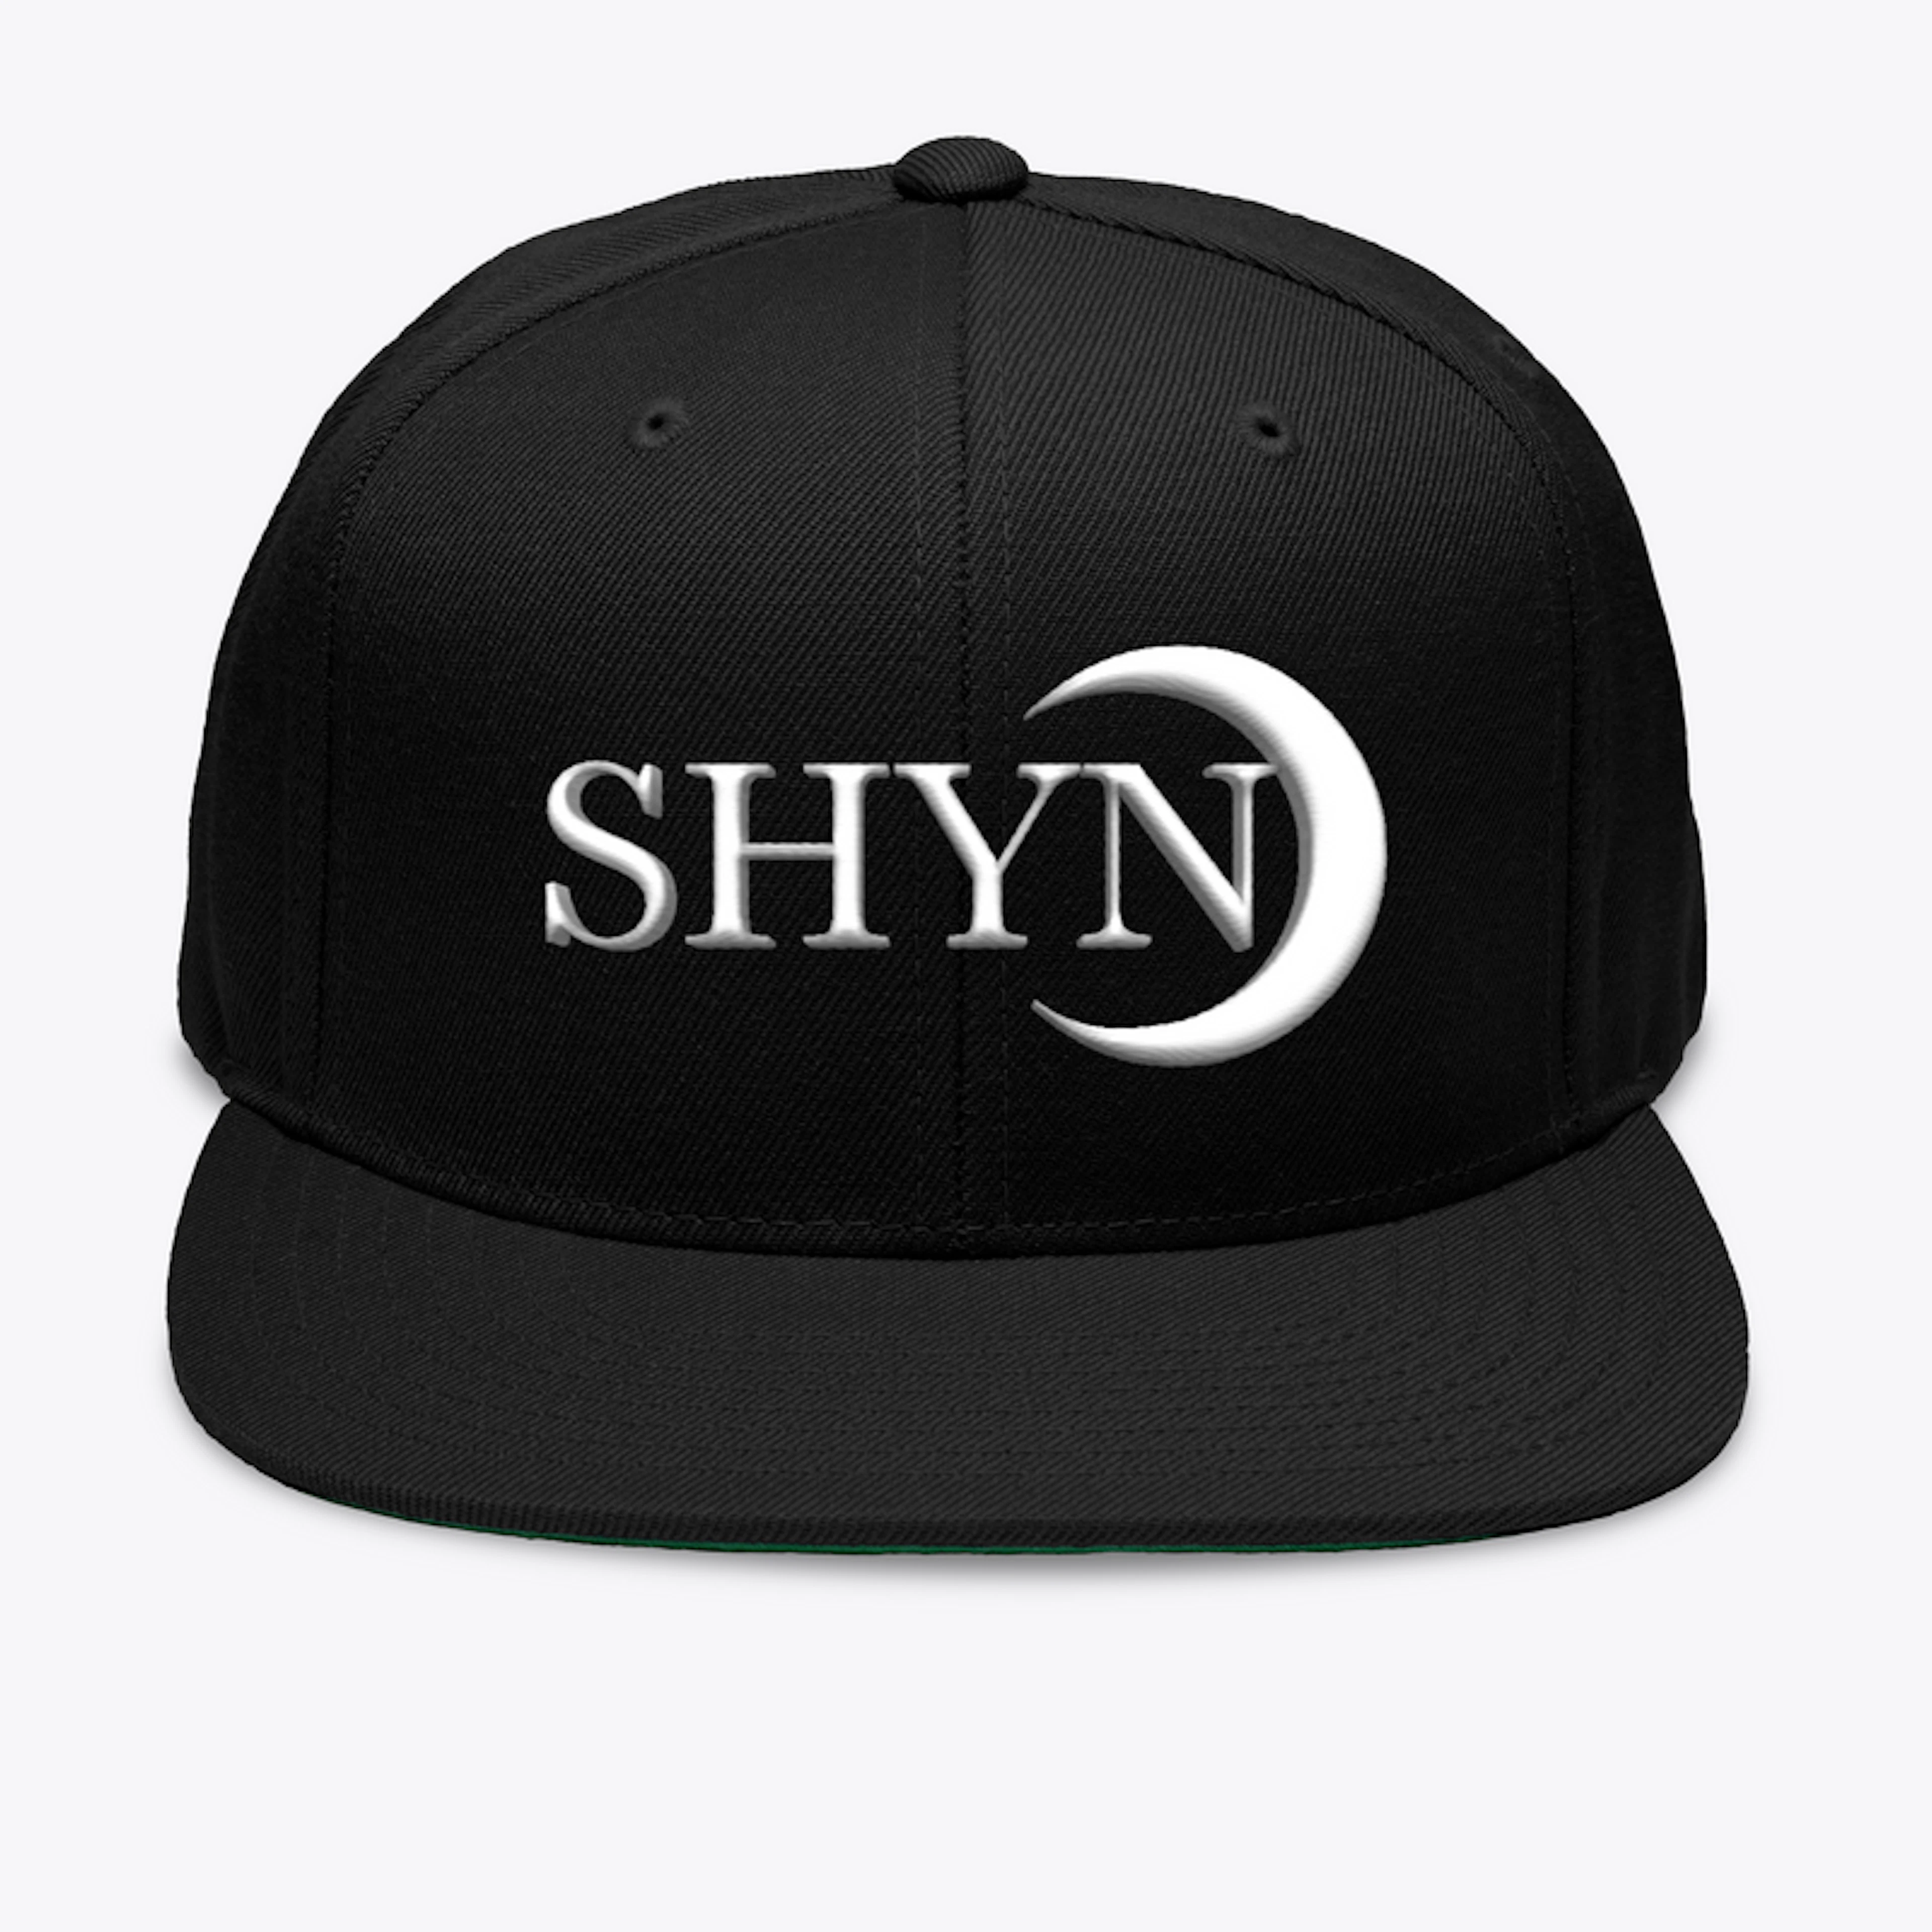 Shyn Clothing Hats